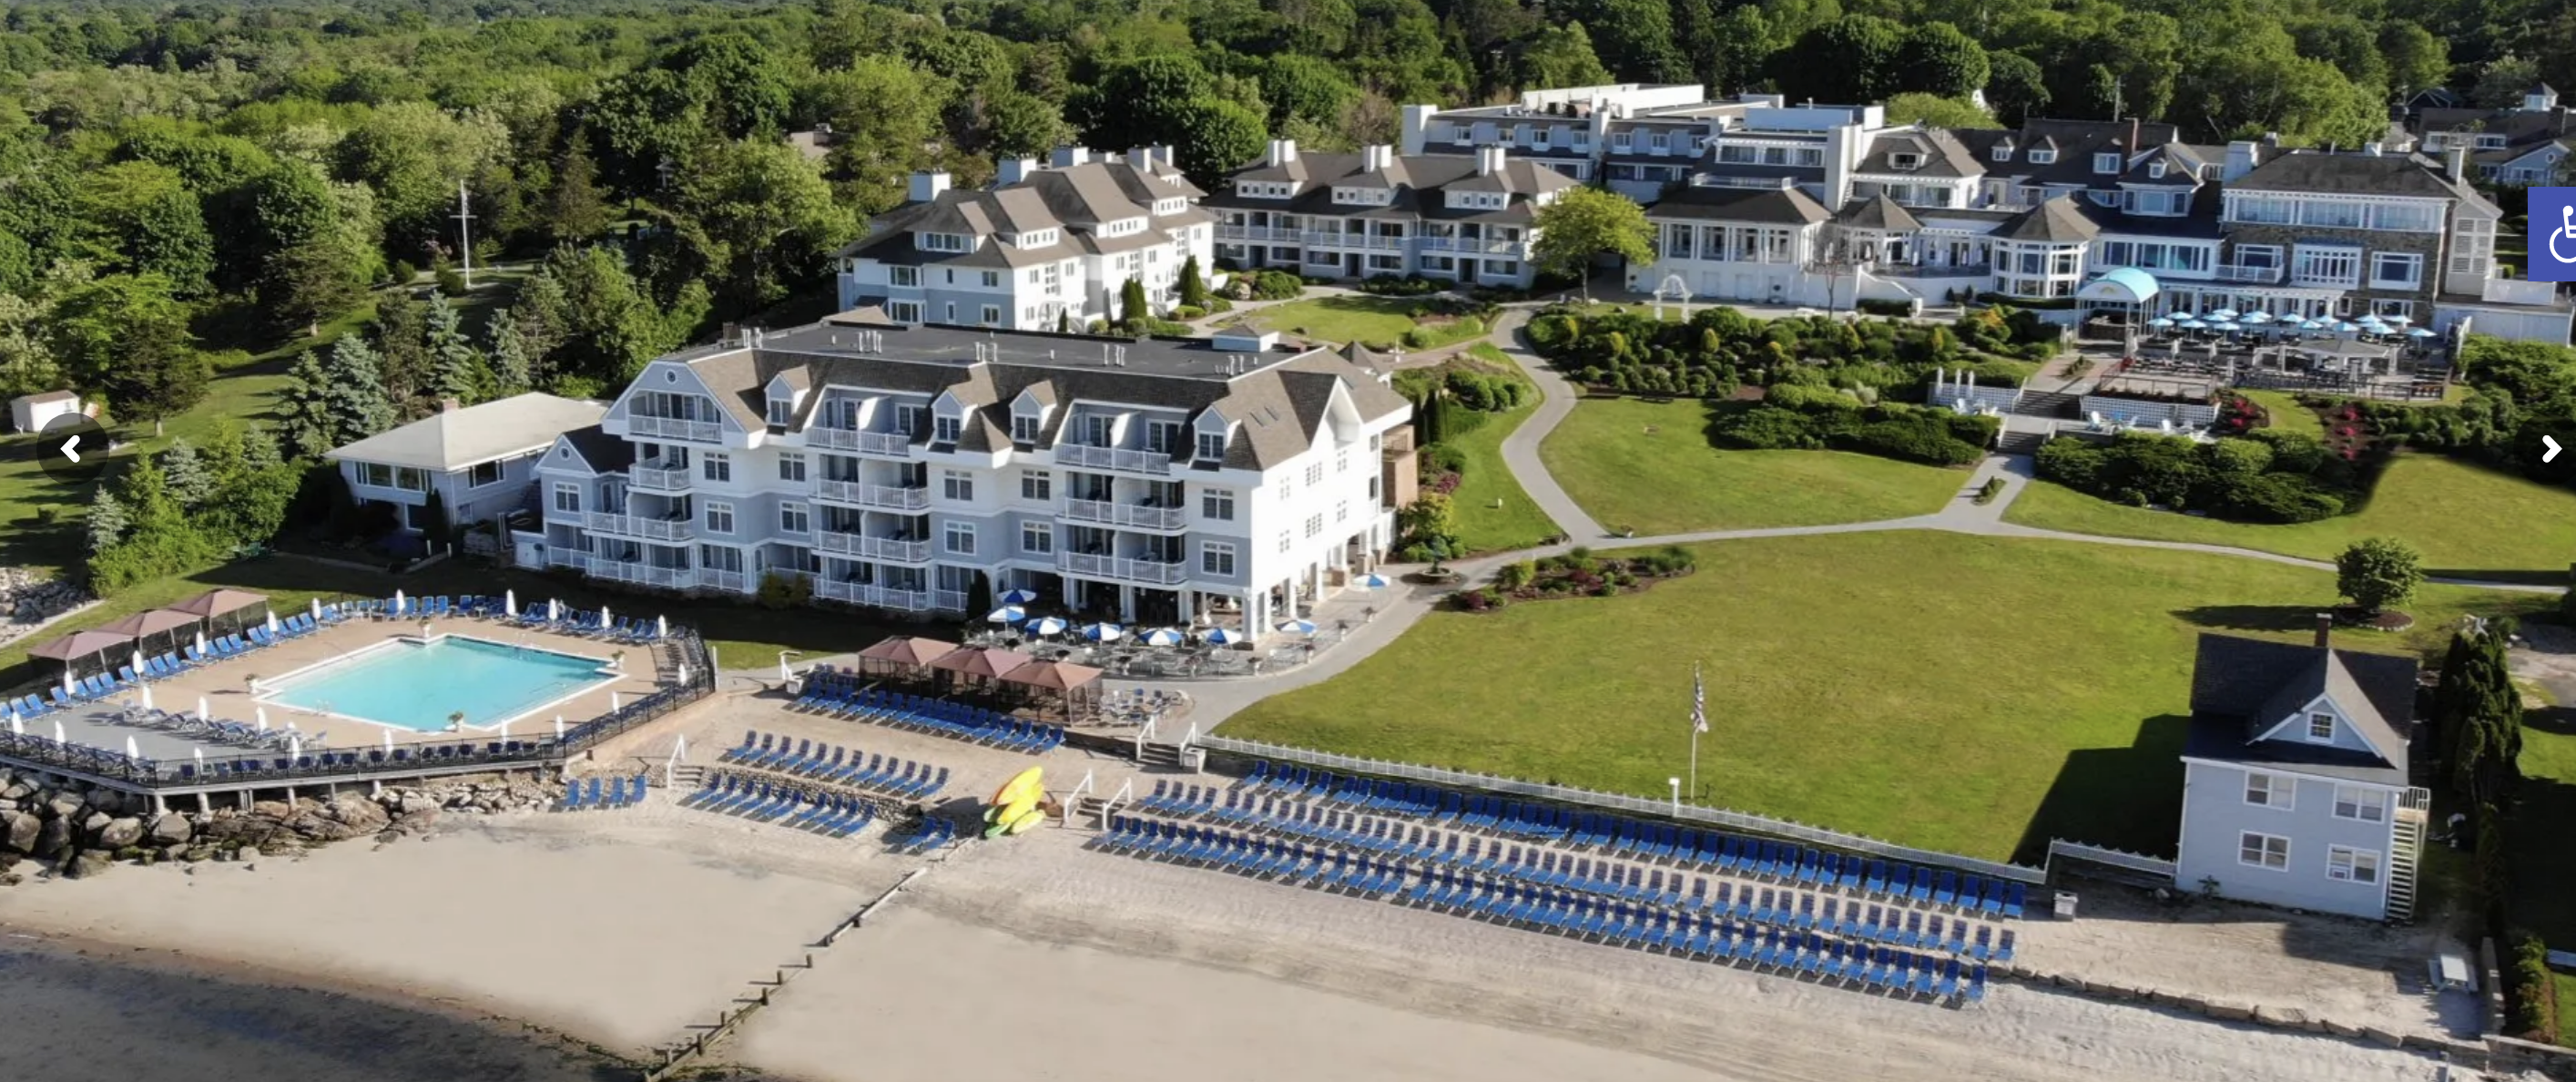 Best Beach Wedding Venues: Water's Edge Resort & Spa, Westbrook, Connecticut